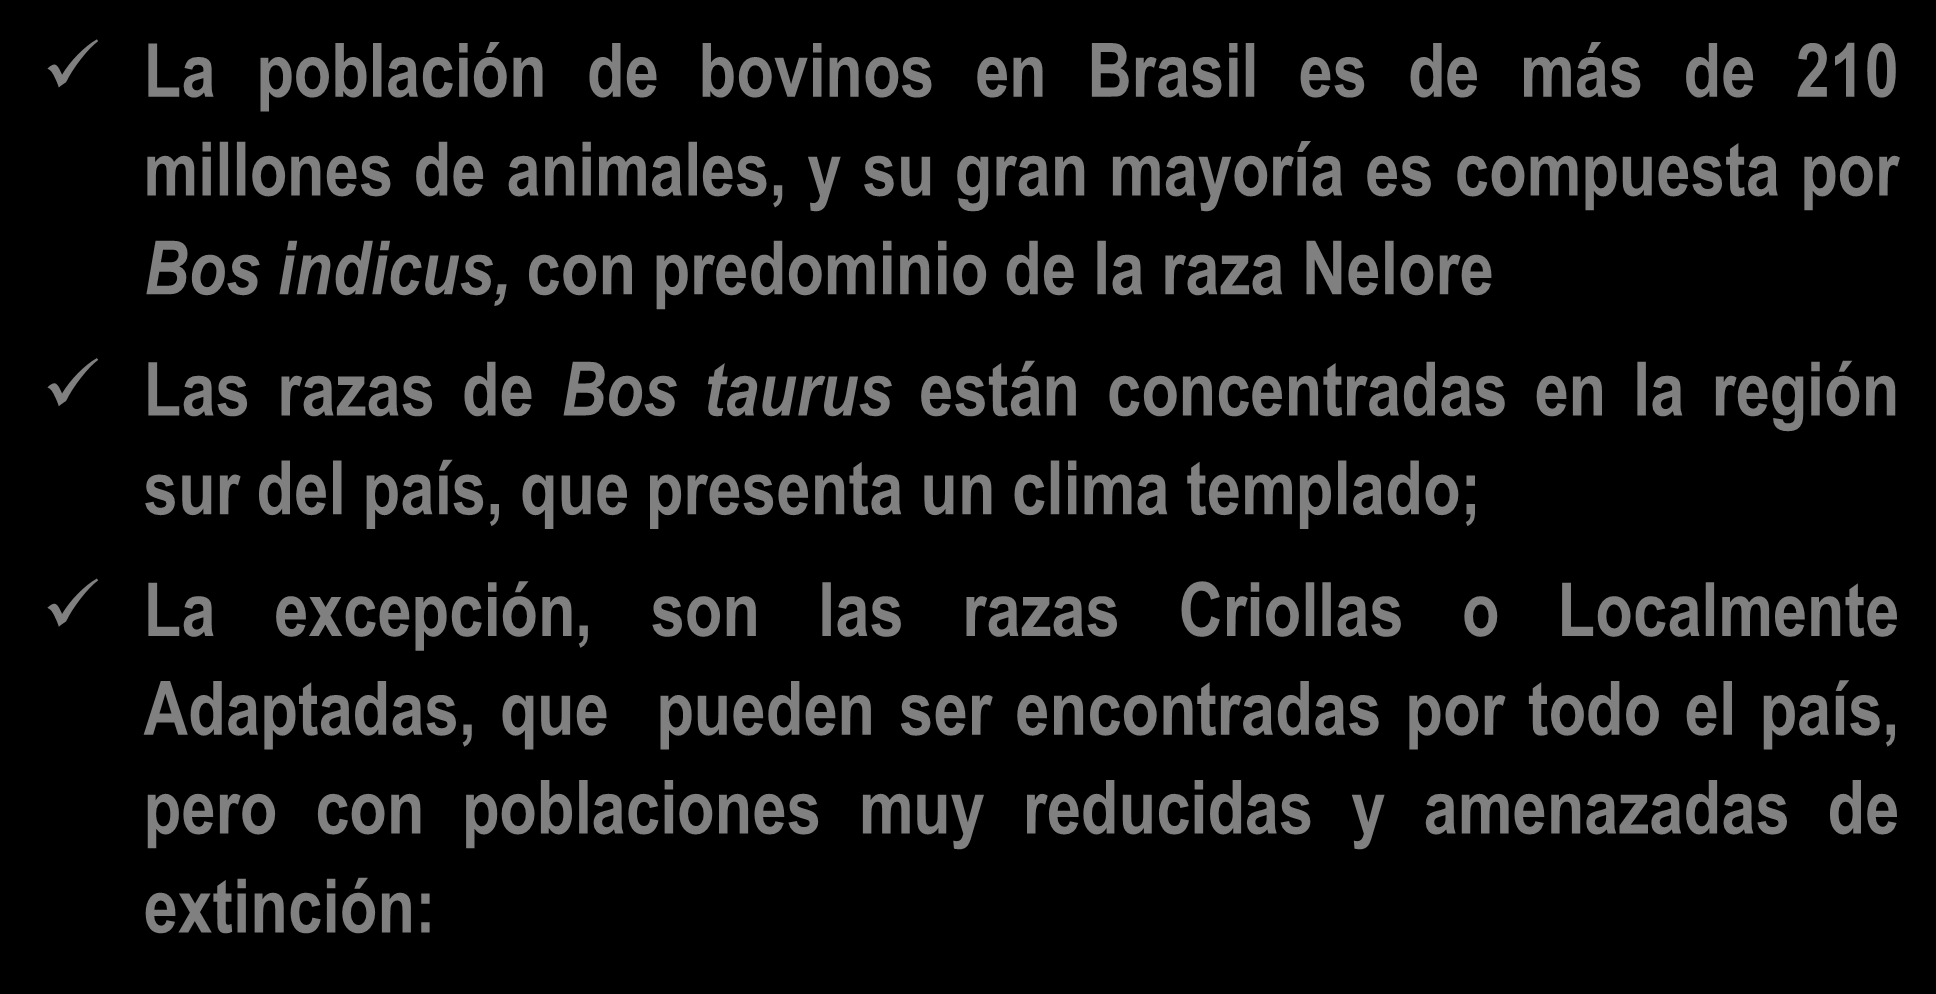 La población de bovinos en Brasil es de más de 210 millones de animales, y su gran mayoría es compuesta por Bos indicus, con predominio de la raza Nelore Las razas de Bos taurus están concentradas en